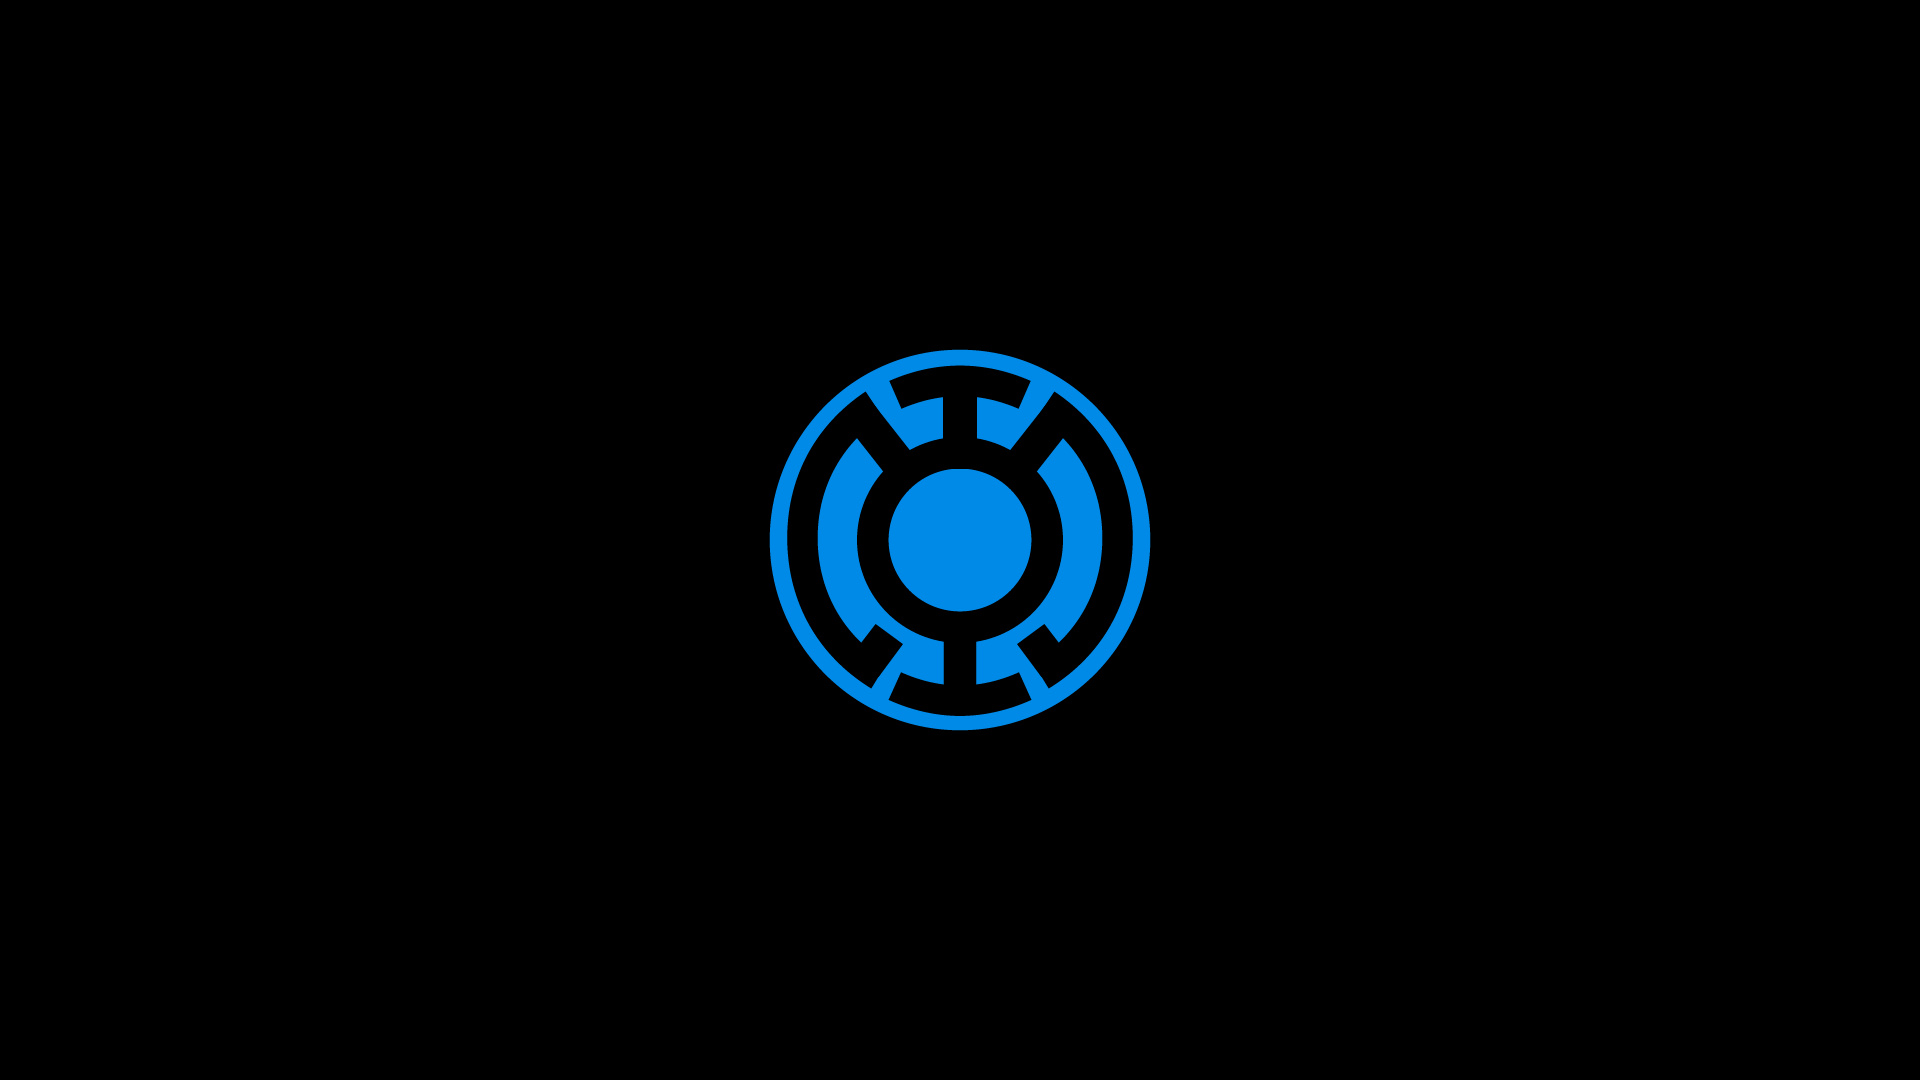 Wallpaper For > Blue Lantern Logo Wallpaper